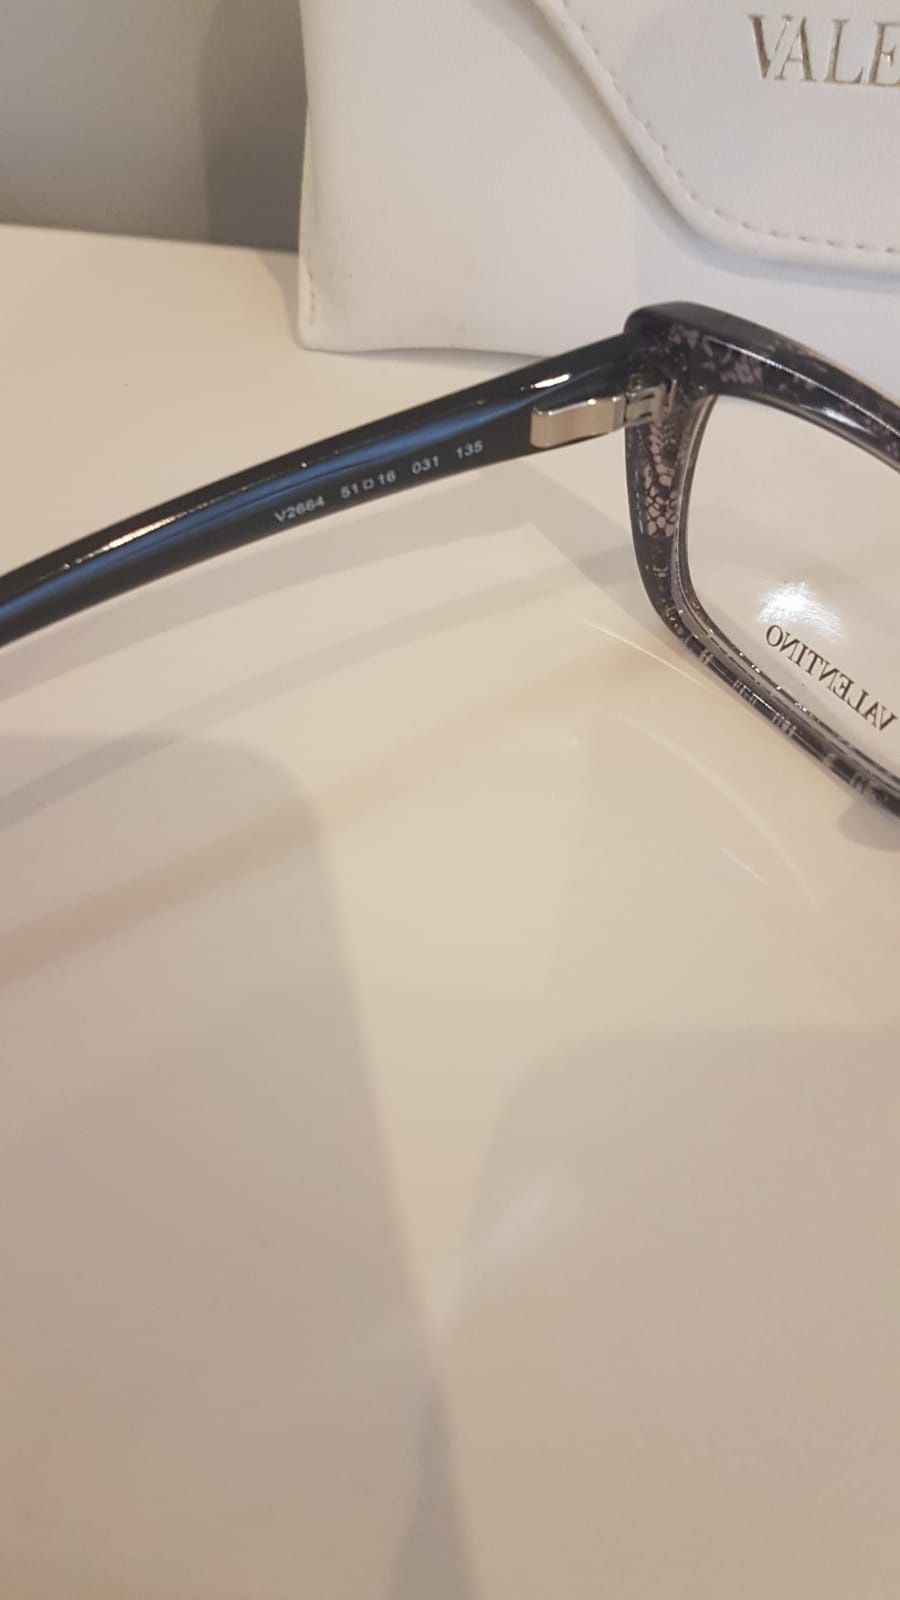 Oprawki okularów korekcyjnych Valentino